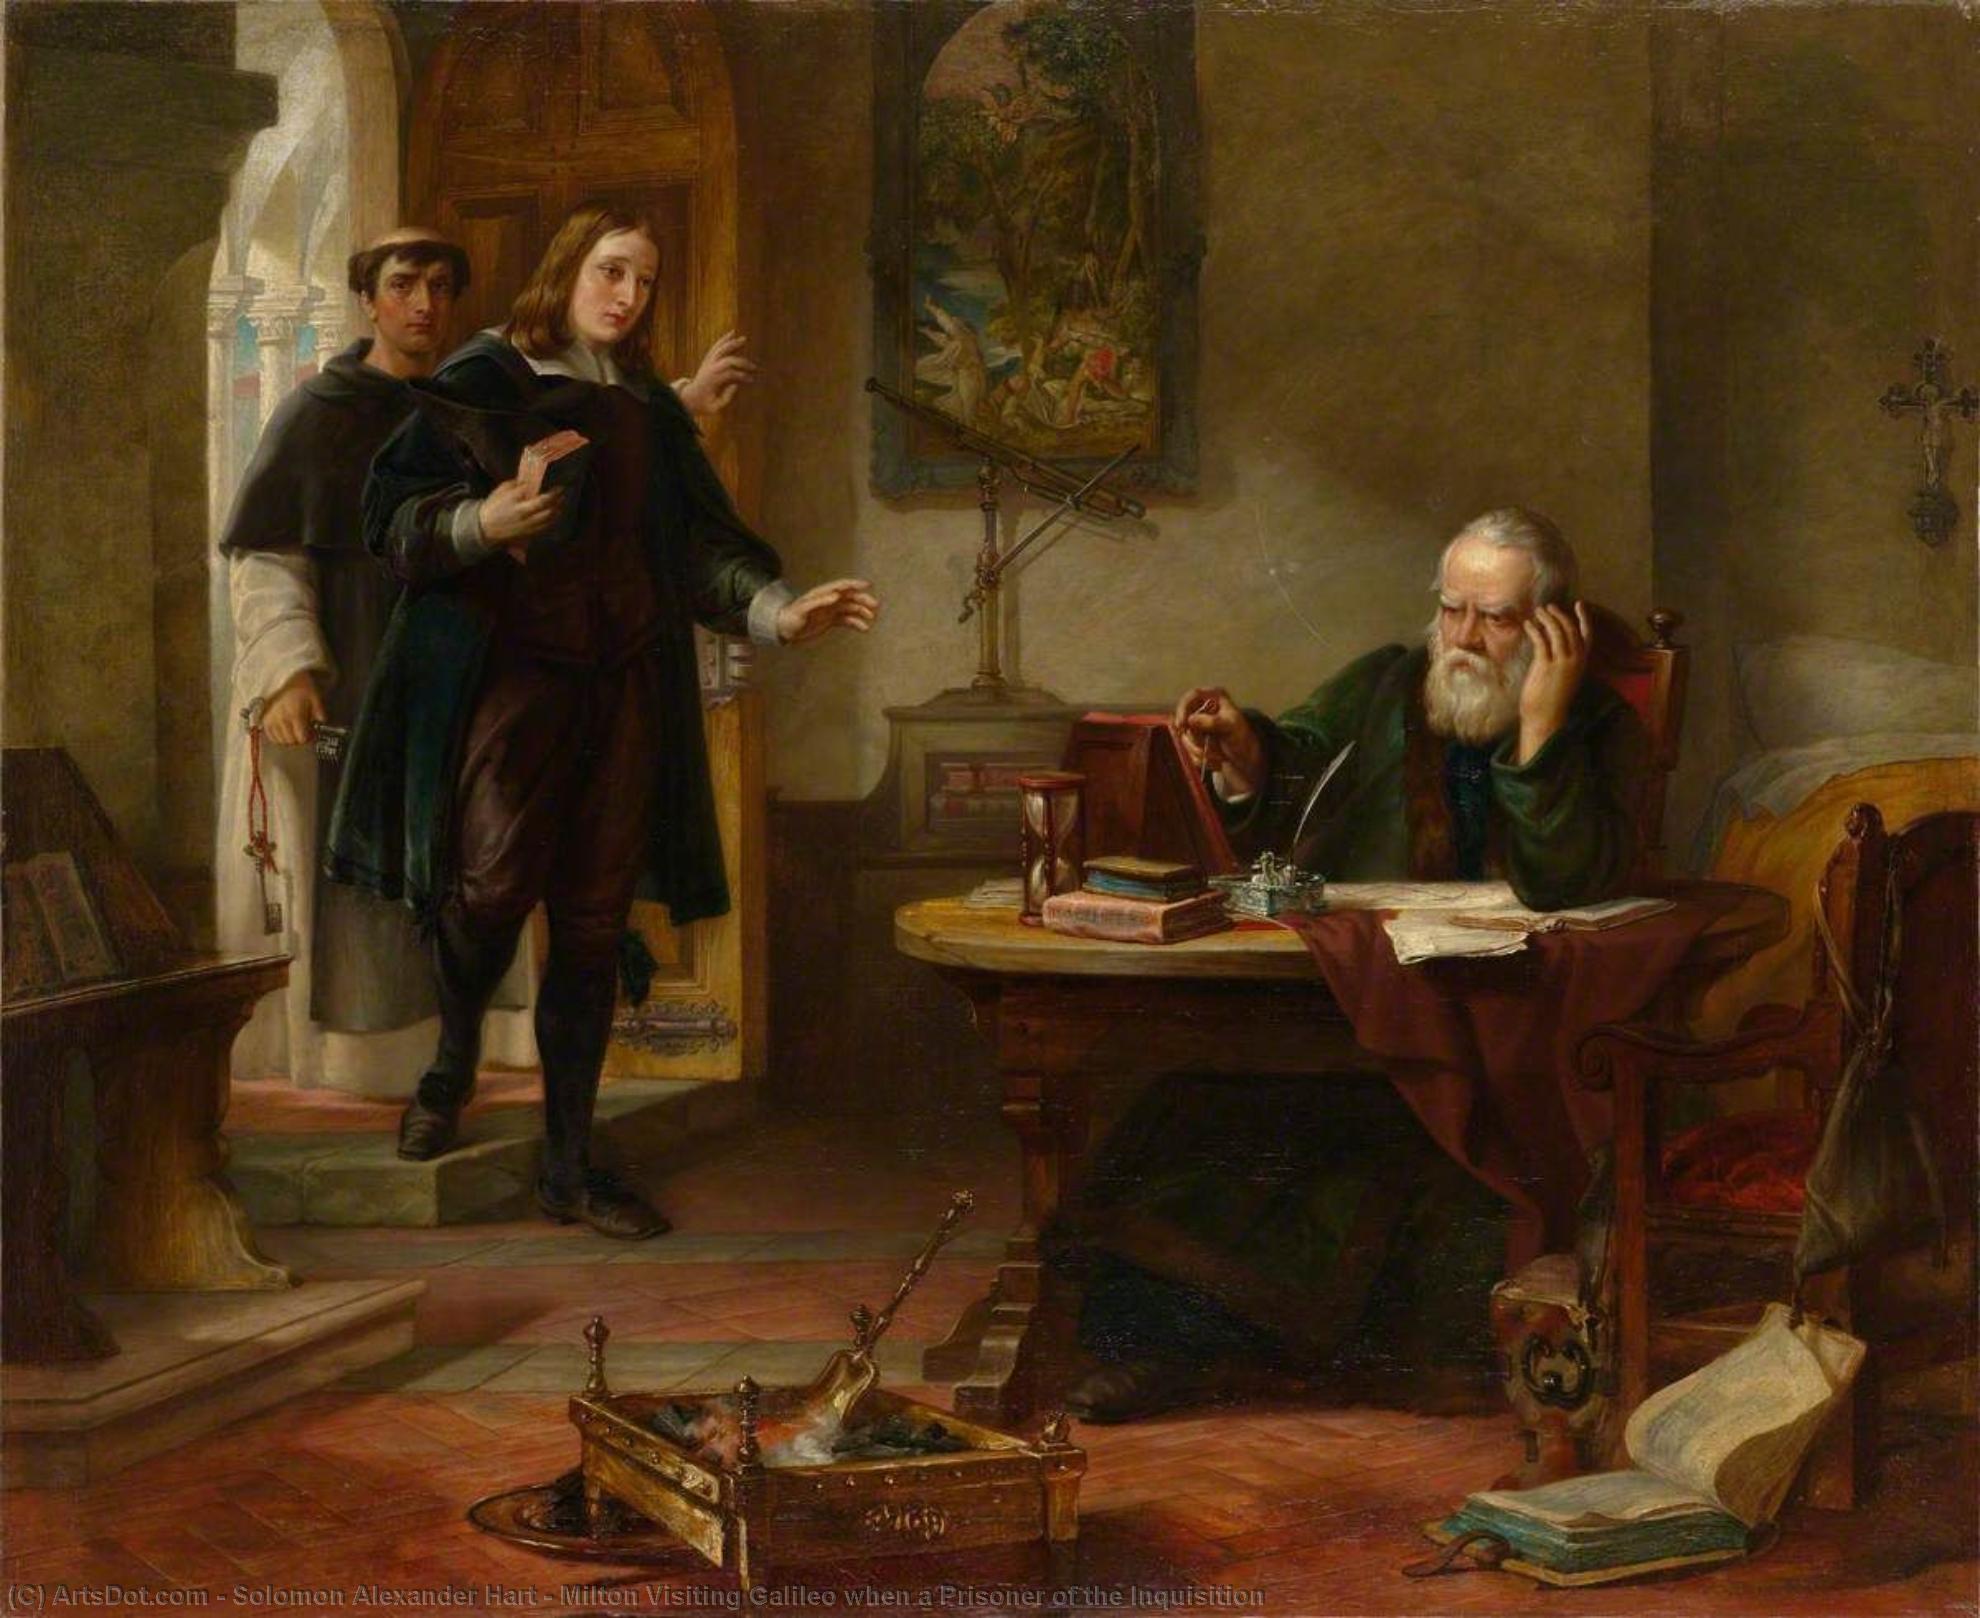 Купить Репродукции Произведений Искусства Милтон посещает Галилео, когда заключенный инквизиции, 1847 по Solomon Alexander Hart (1806-1881, United Kingdom) | ArtsDot.com